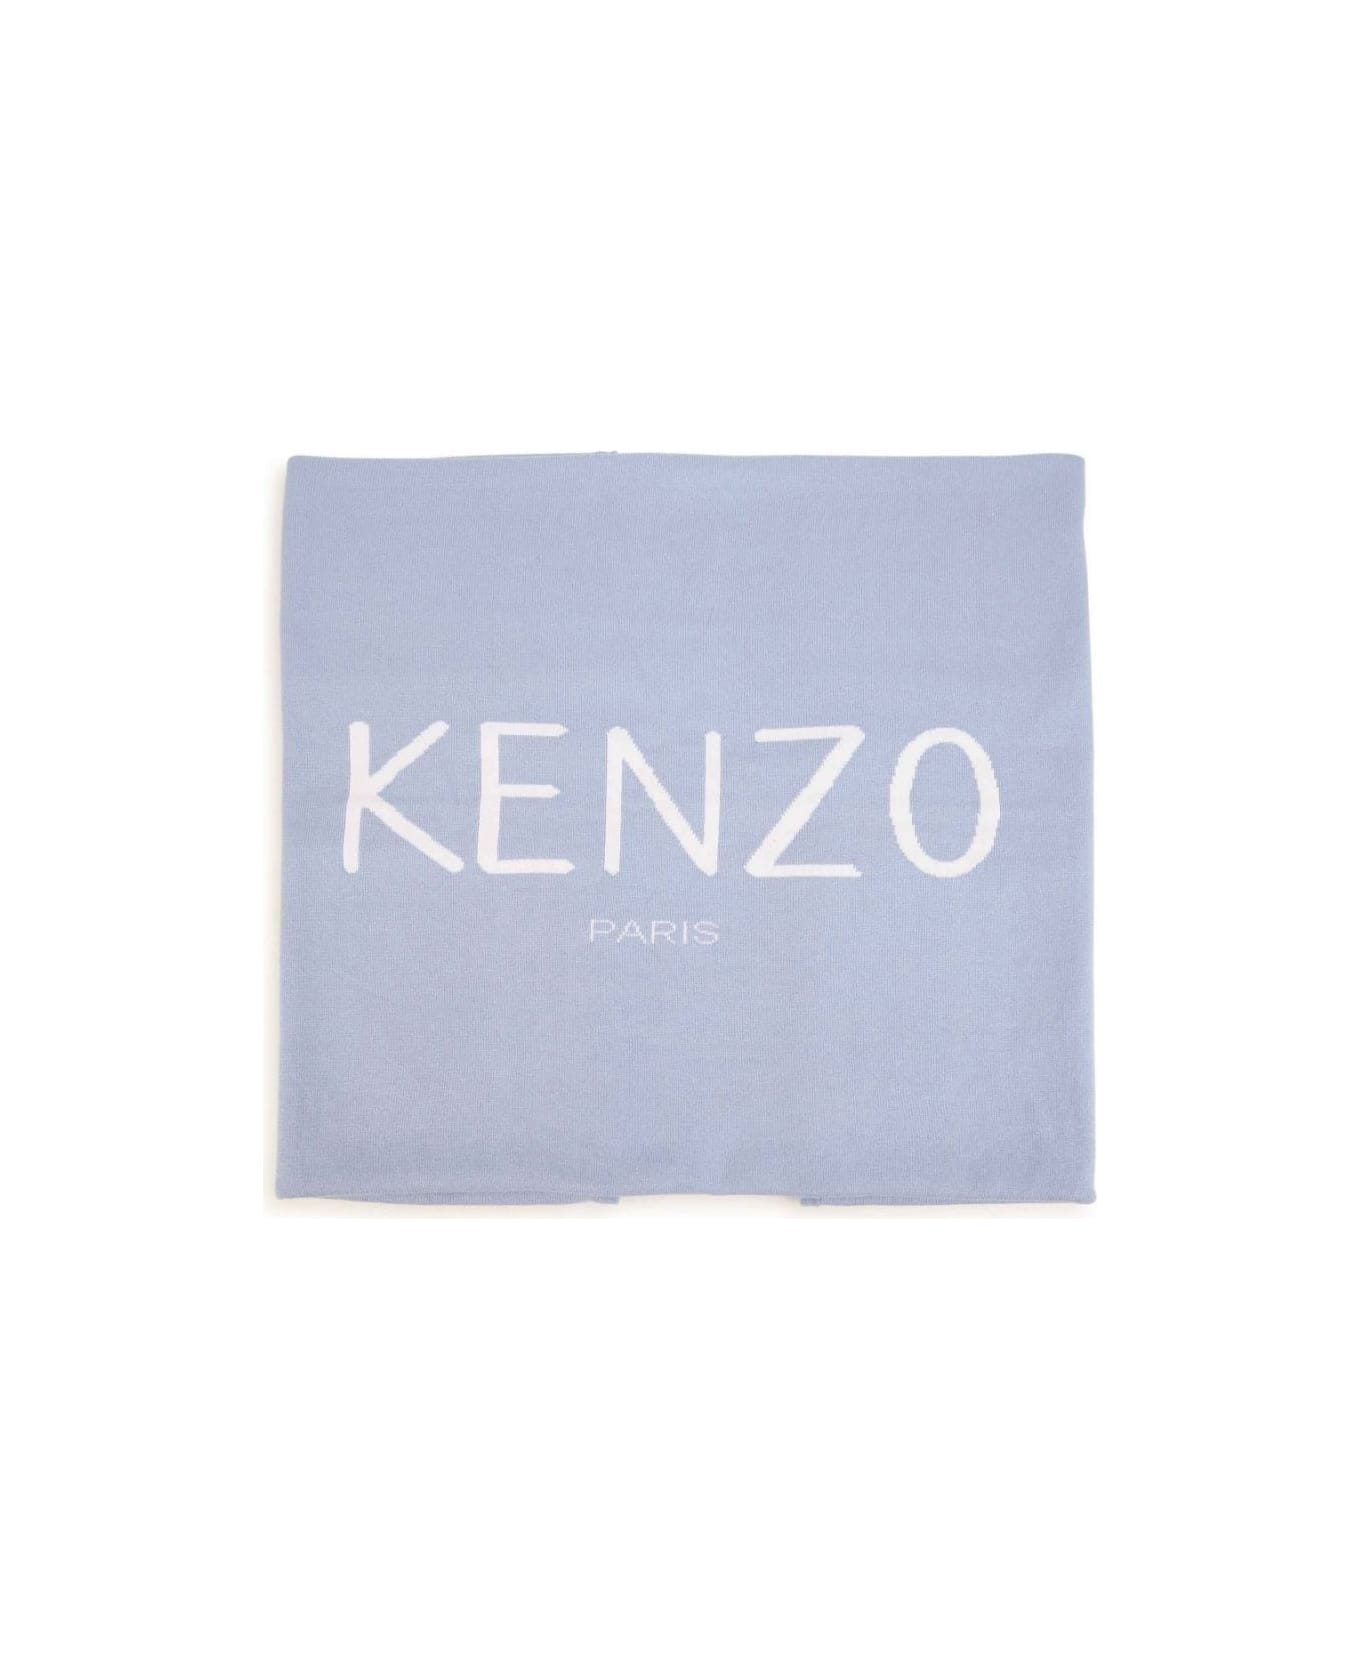 Kenzo Kids Kenzo Coperta Celeste In Maglia Di Cotone Baby Boy - Celeste